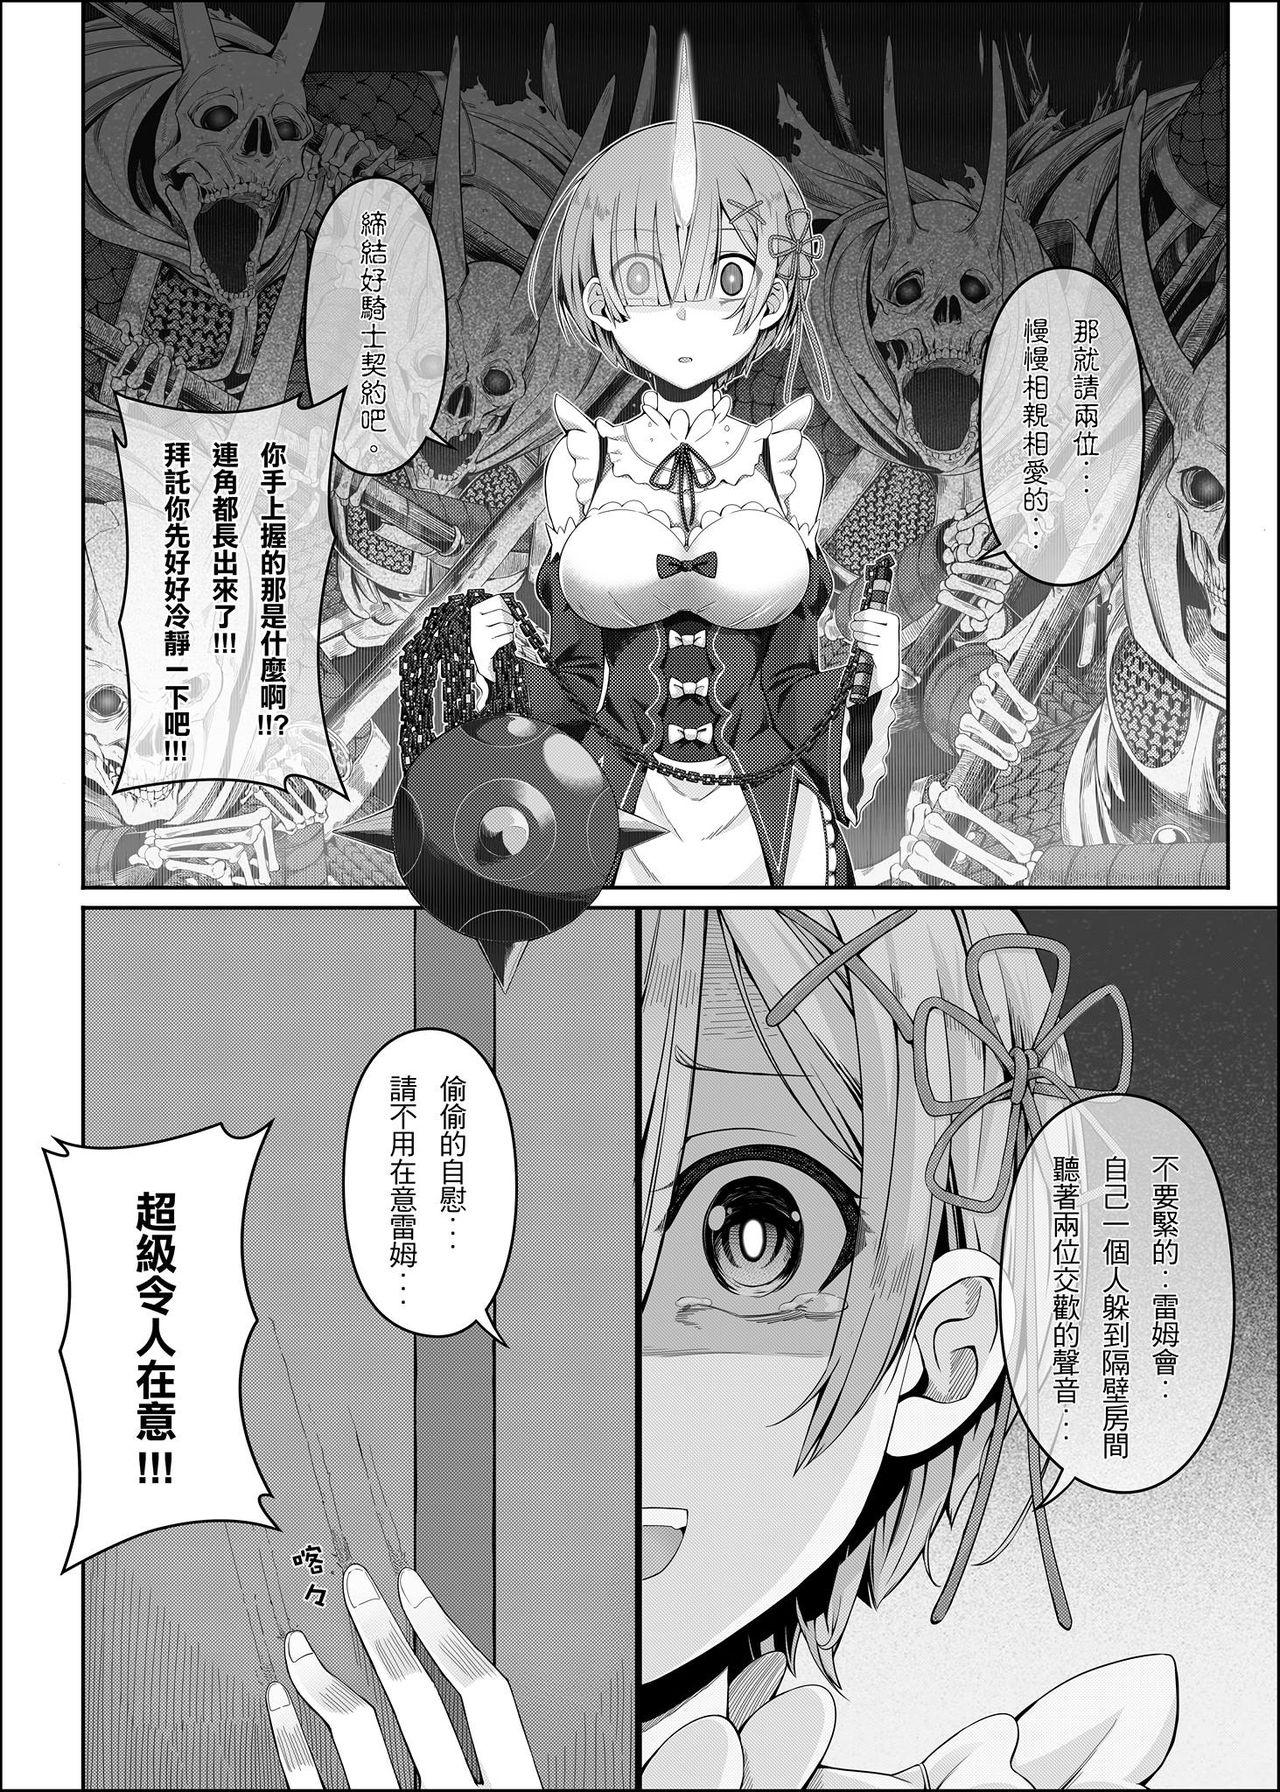 Virgin RE:0-自稱騎士道 - Re zero kara hajimeru isekai seikatsu Cheerleader - Page 8